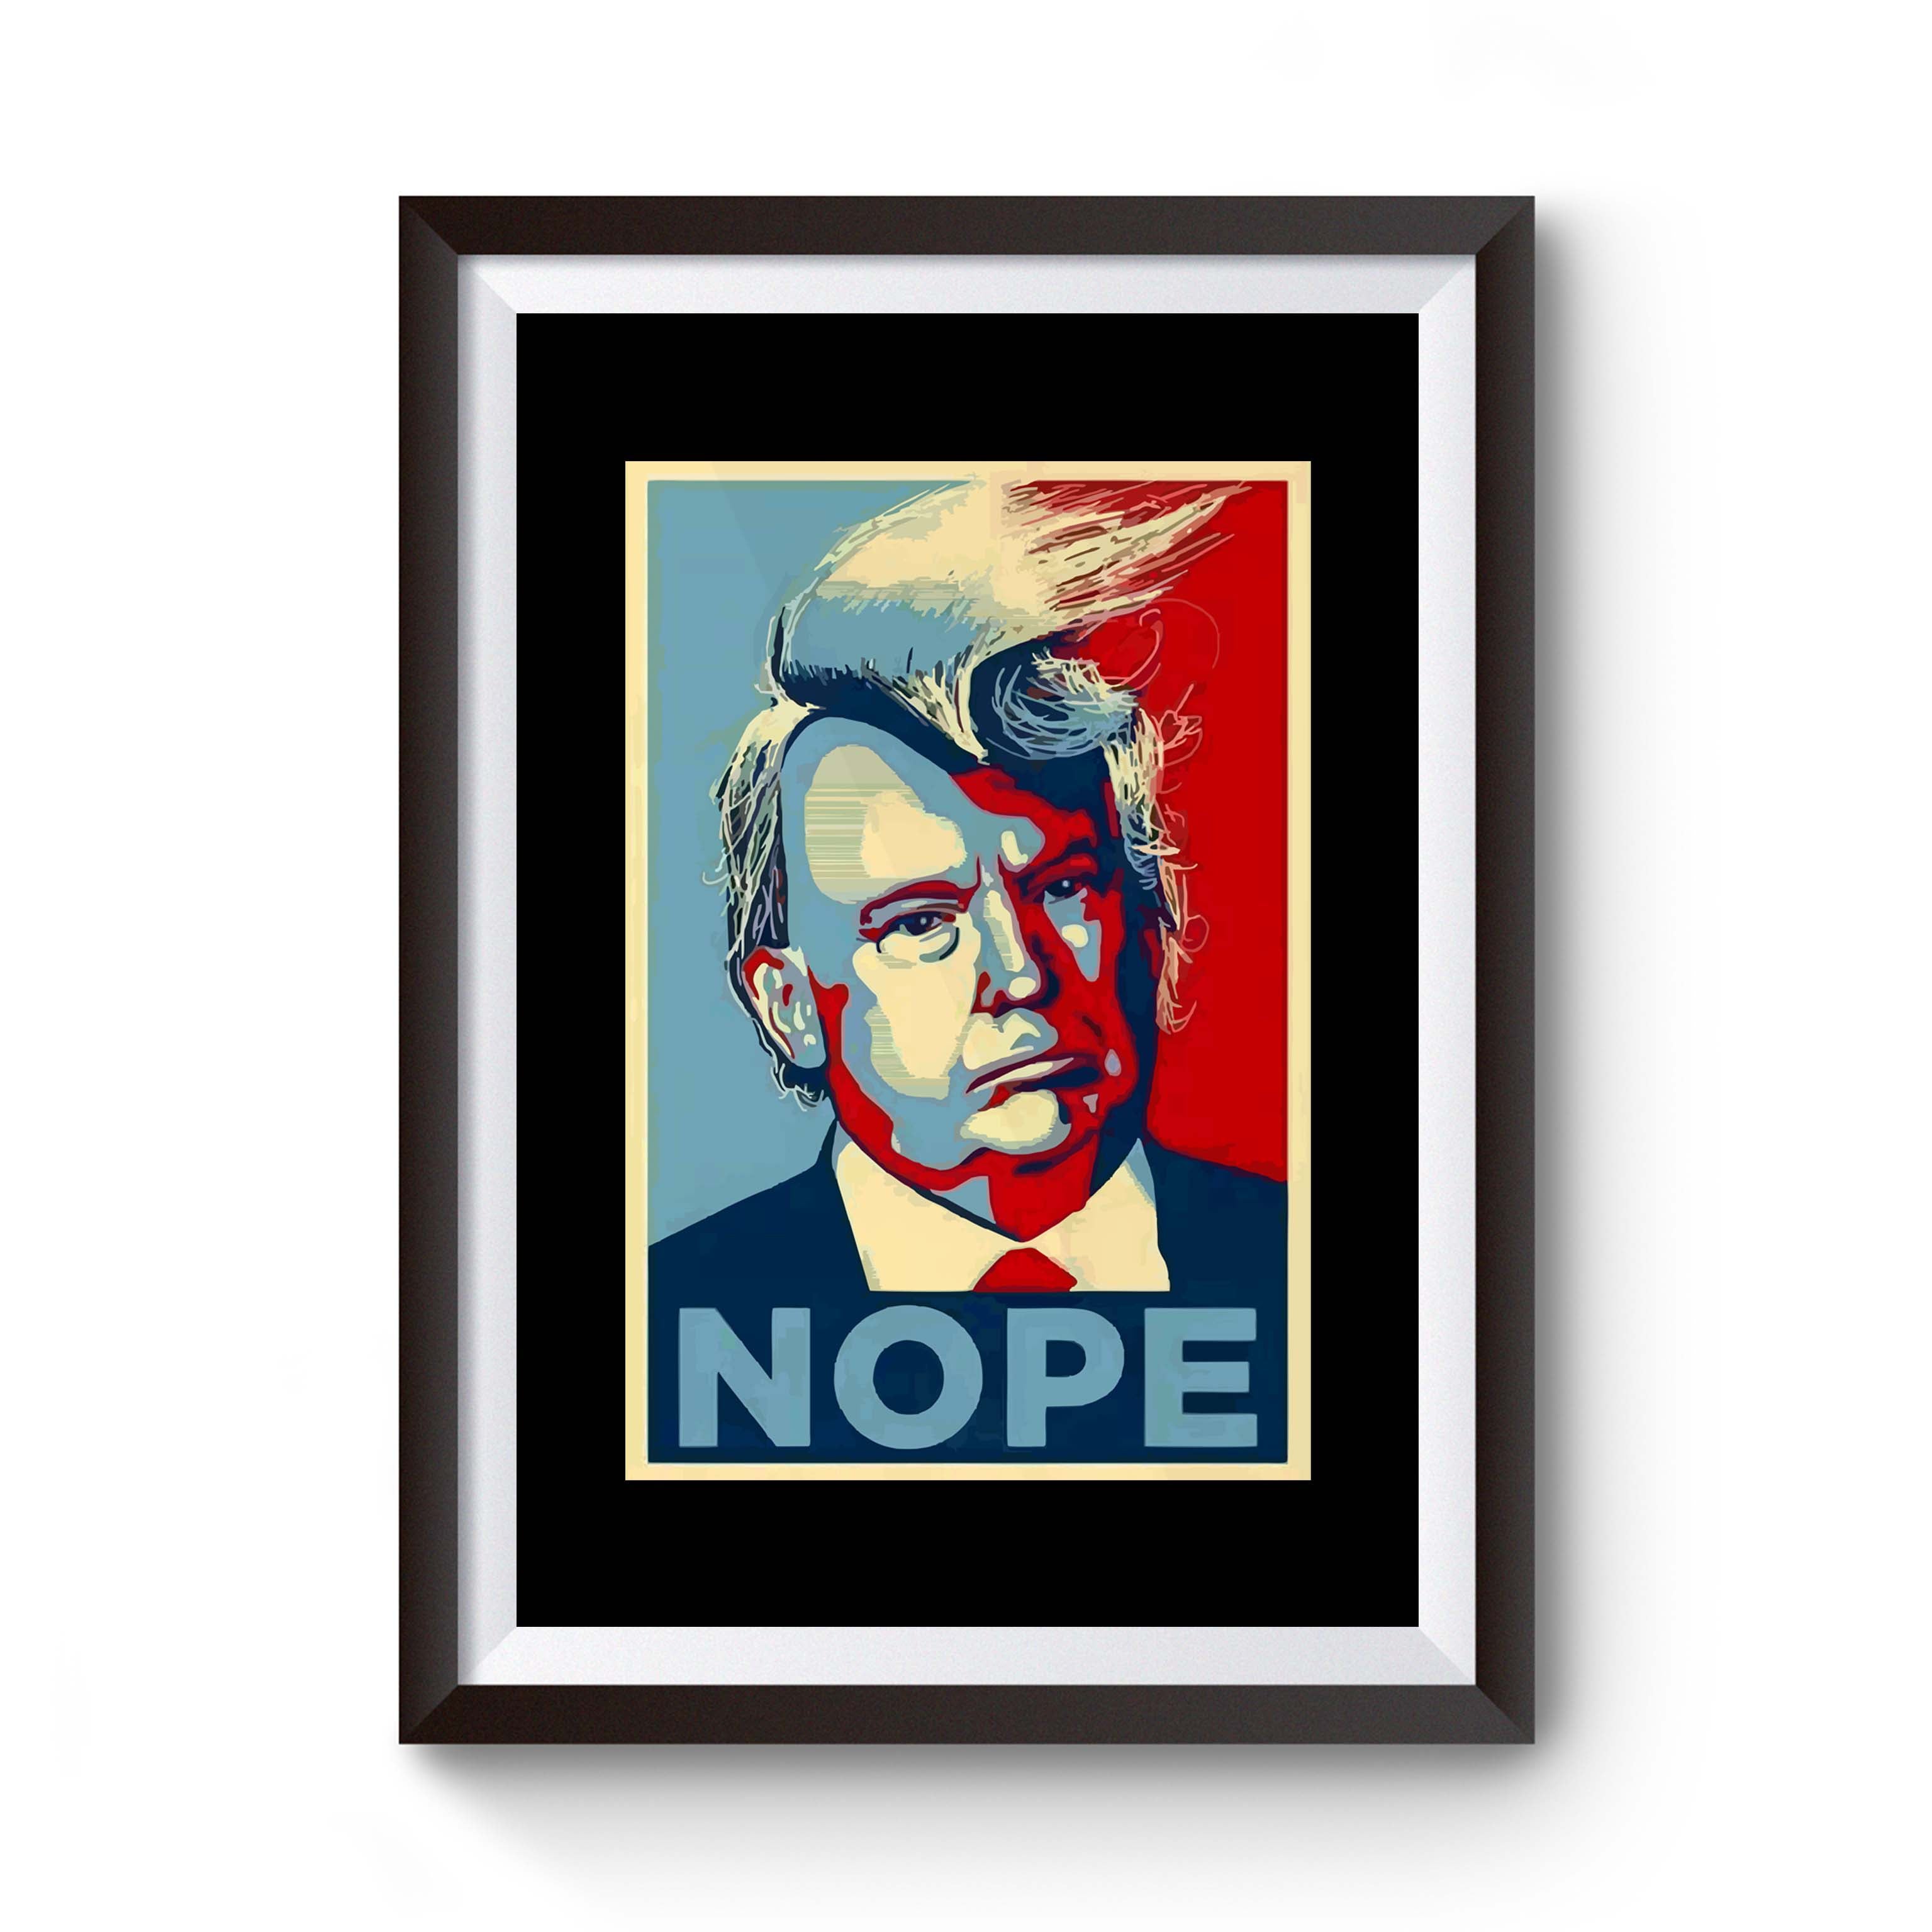 Nope_Donald_Trump_Comb_Over_Parody_Shepard_Fairey_Obama_Hope_CPY_d788455b-b58a-4af9-9f1c-cadf019954e9.jpg